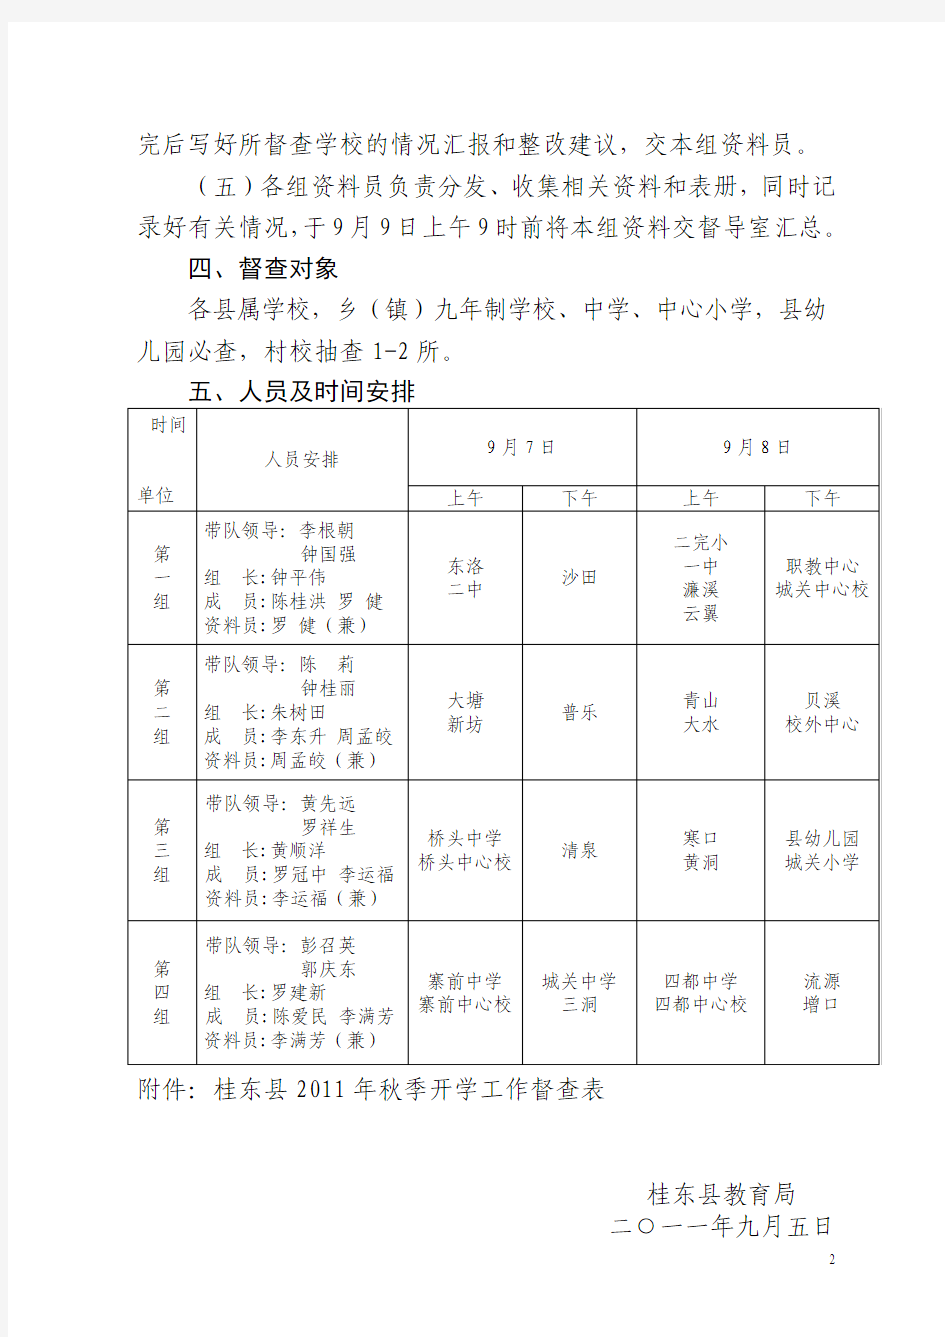 桂东县2011年秋季开学工作督查方案-33份